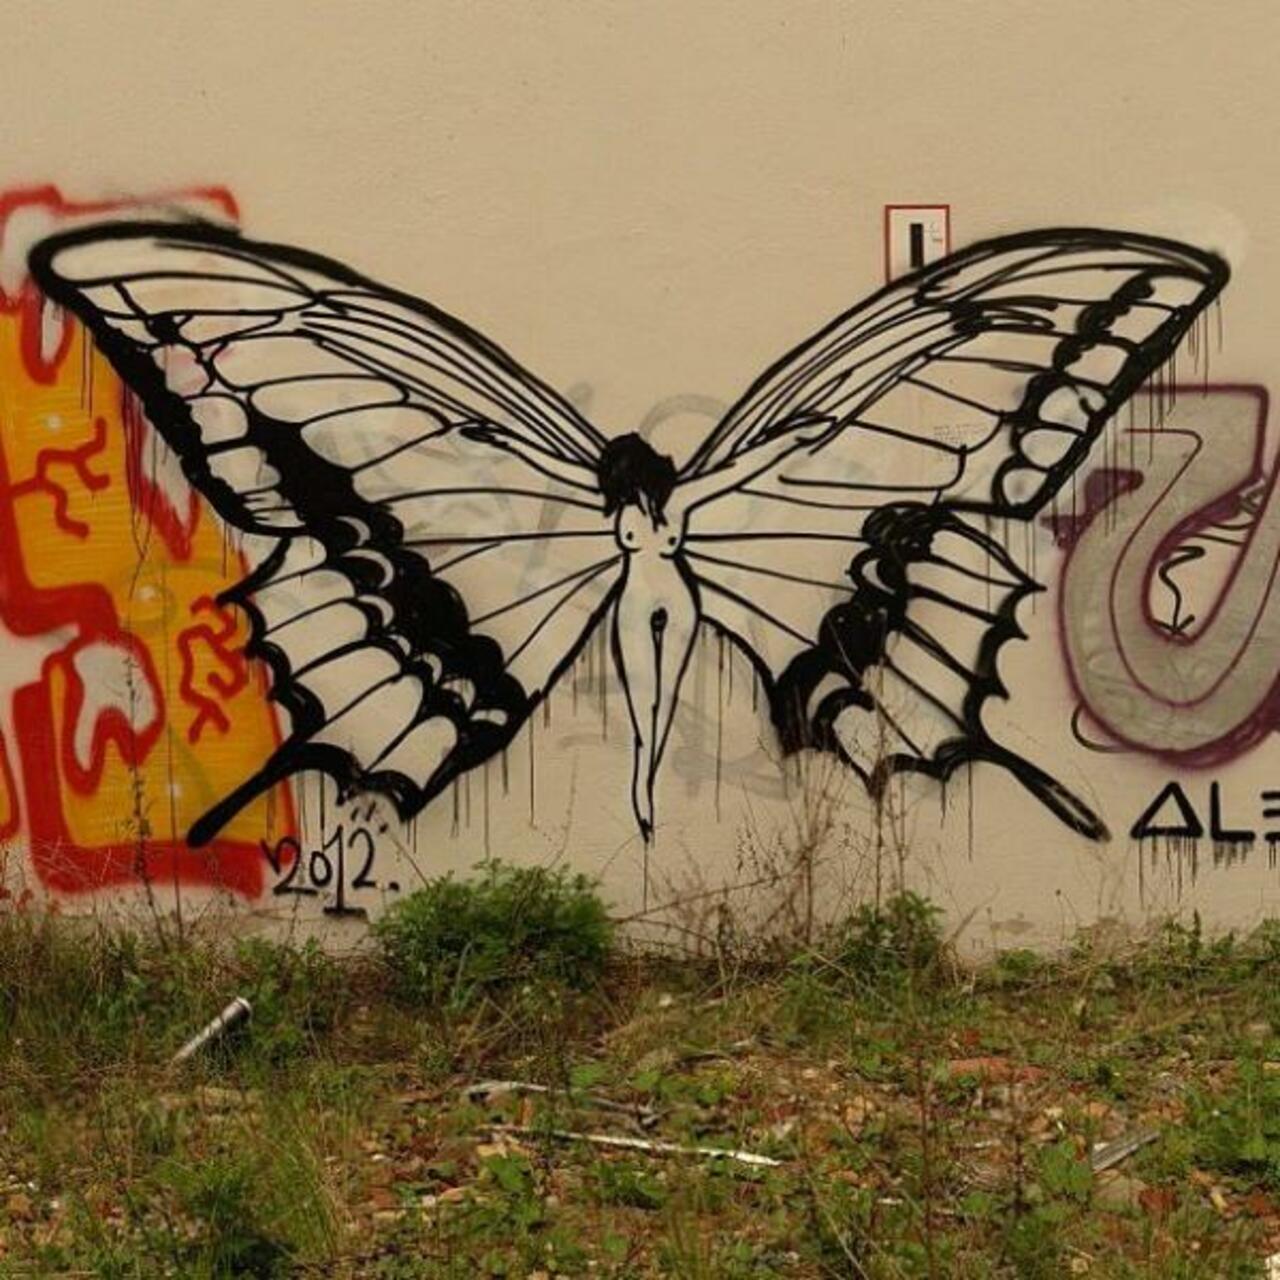 #art #streetart #graffiti http://t.co/BSm5djd4Ox